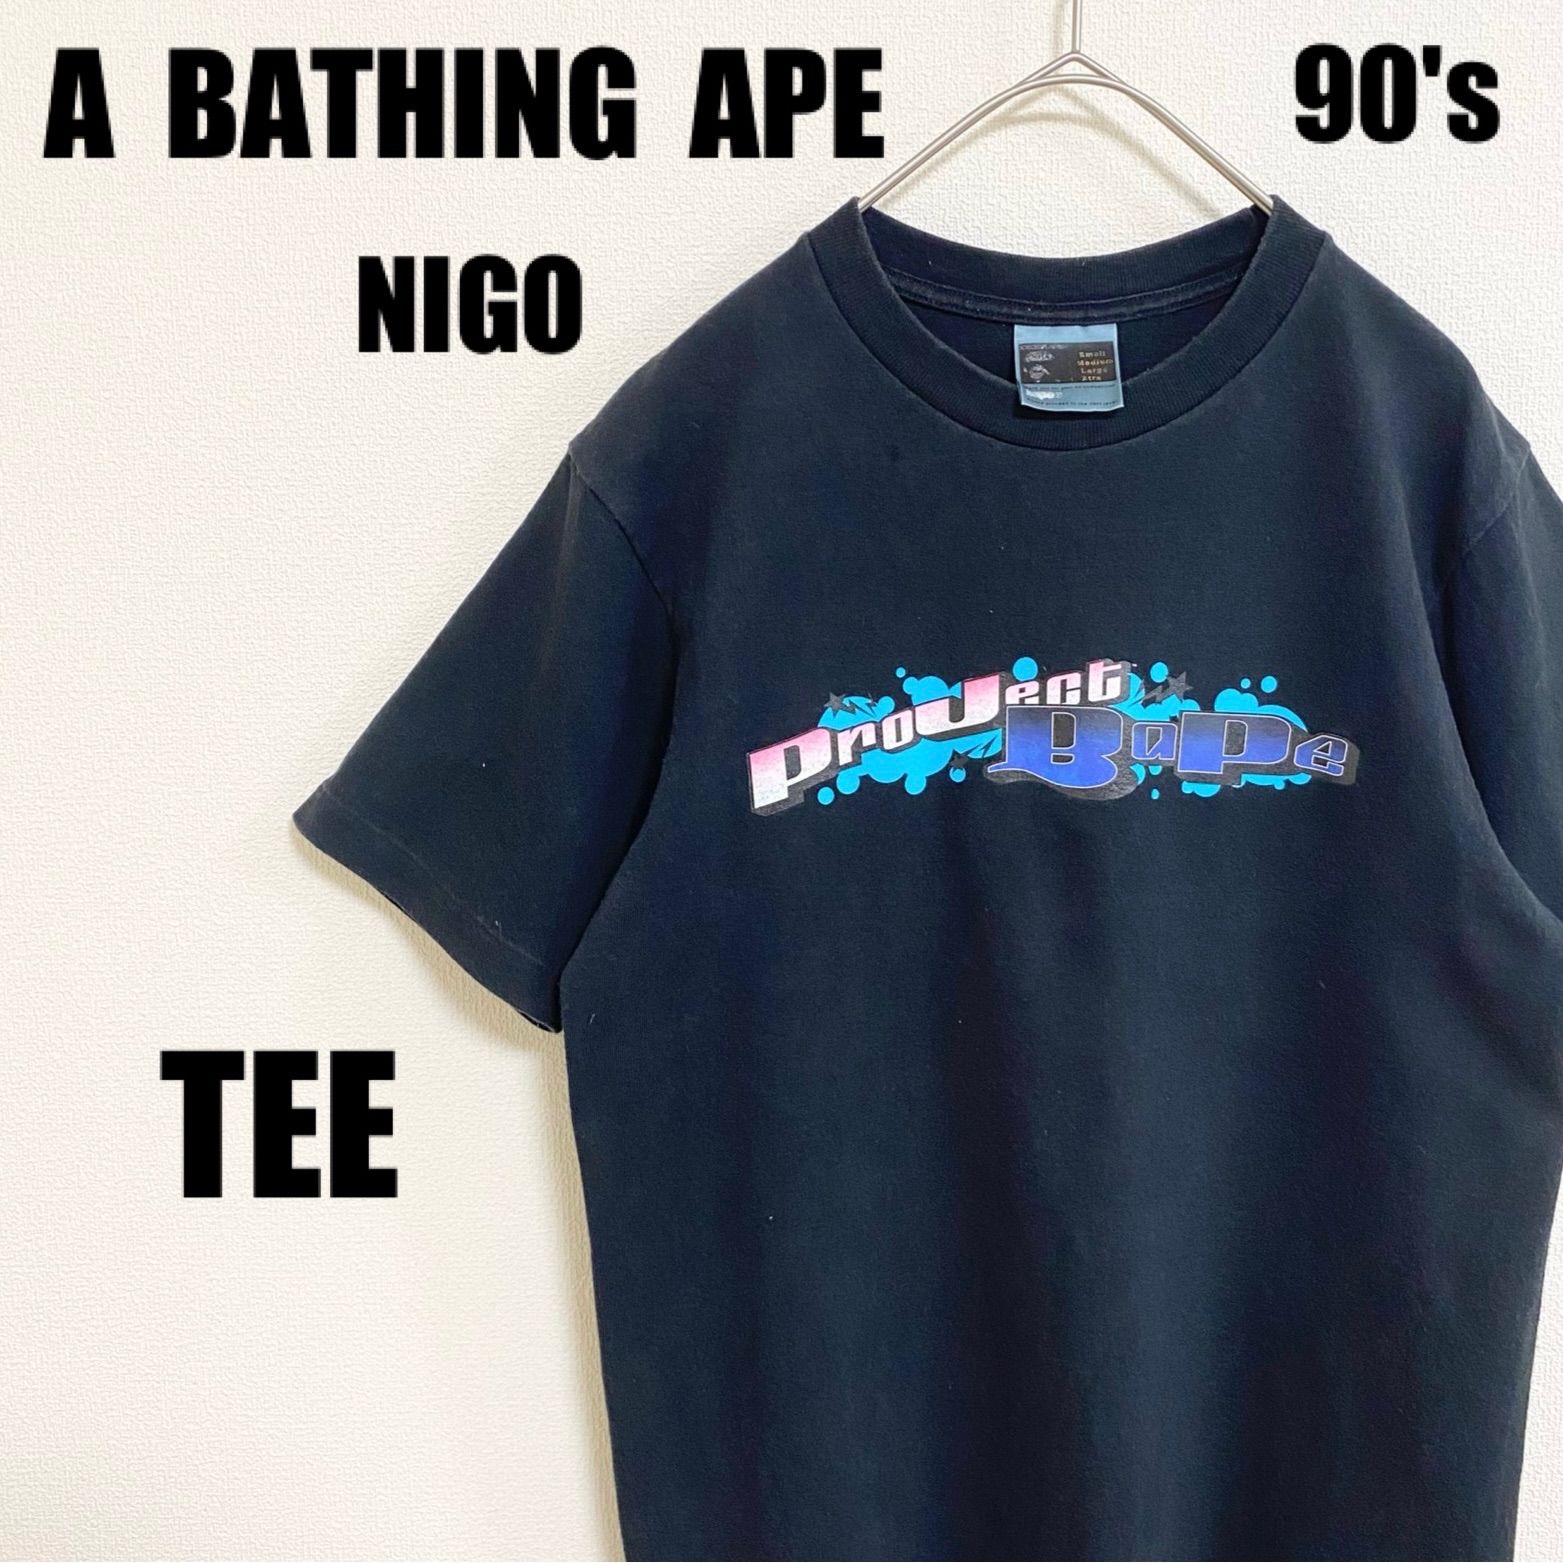 90s アベイシングエイプ Tシャツ A BATHING APE TEE 黒 ブラック メンズ Sサイズ レディース 実寸Lサイズ ユニセックス  ストリート NIGO 裏原系